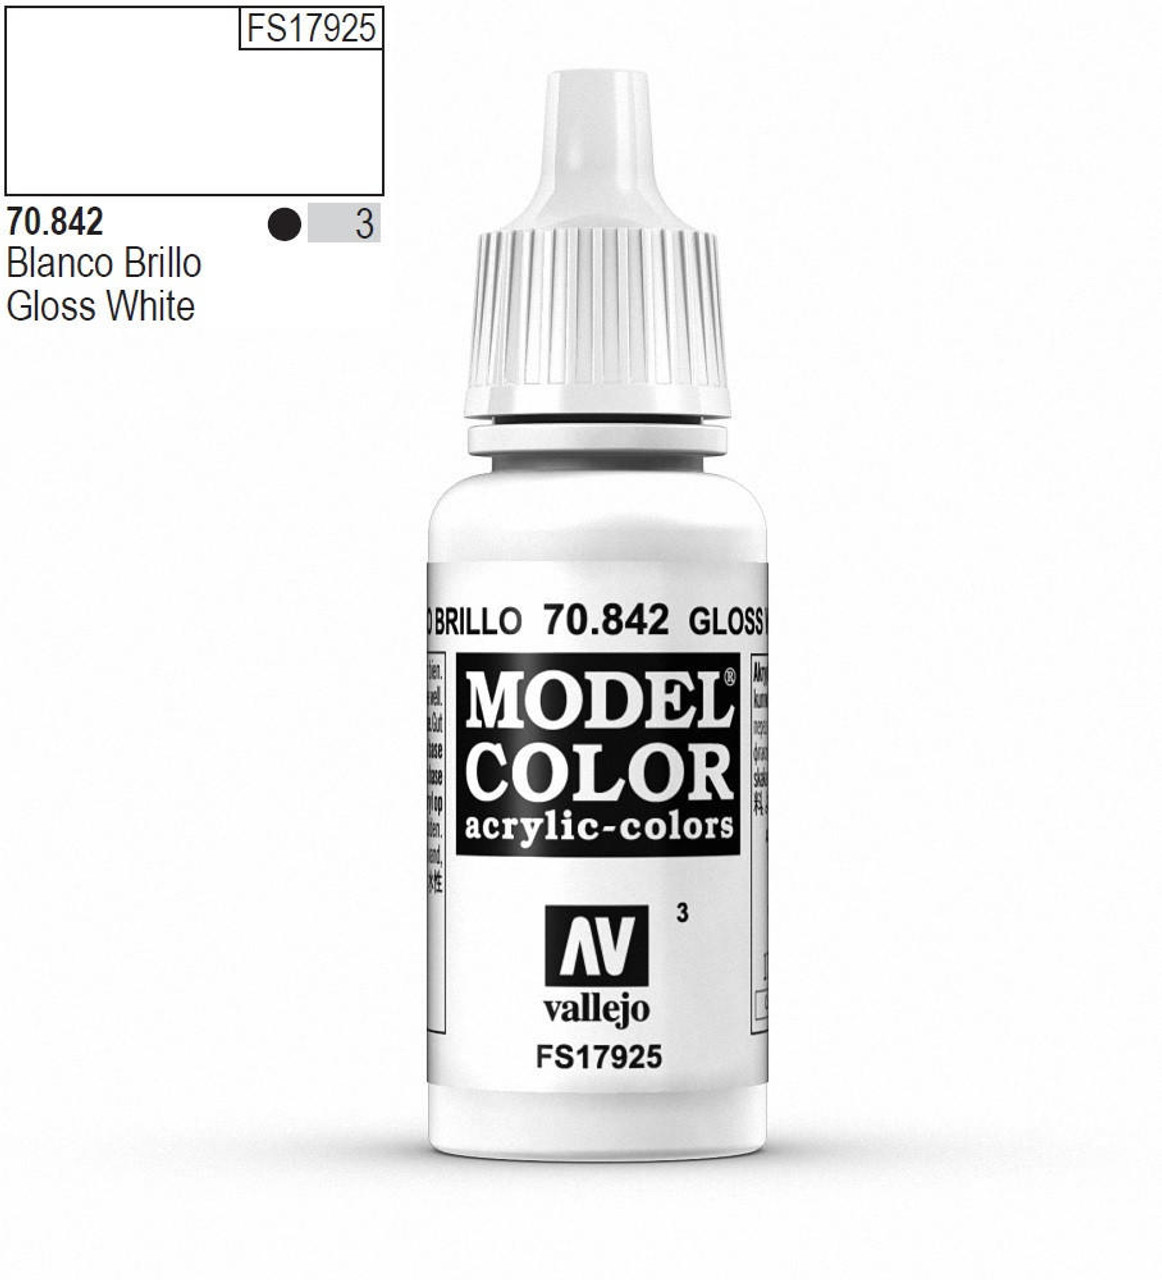 Vallejo - Thinner: 190: Model Color 470-17ML. Gloss medium